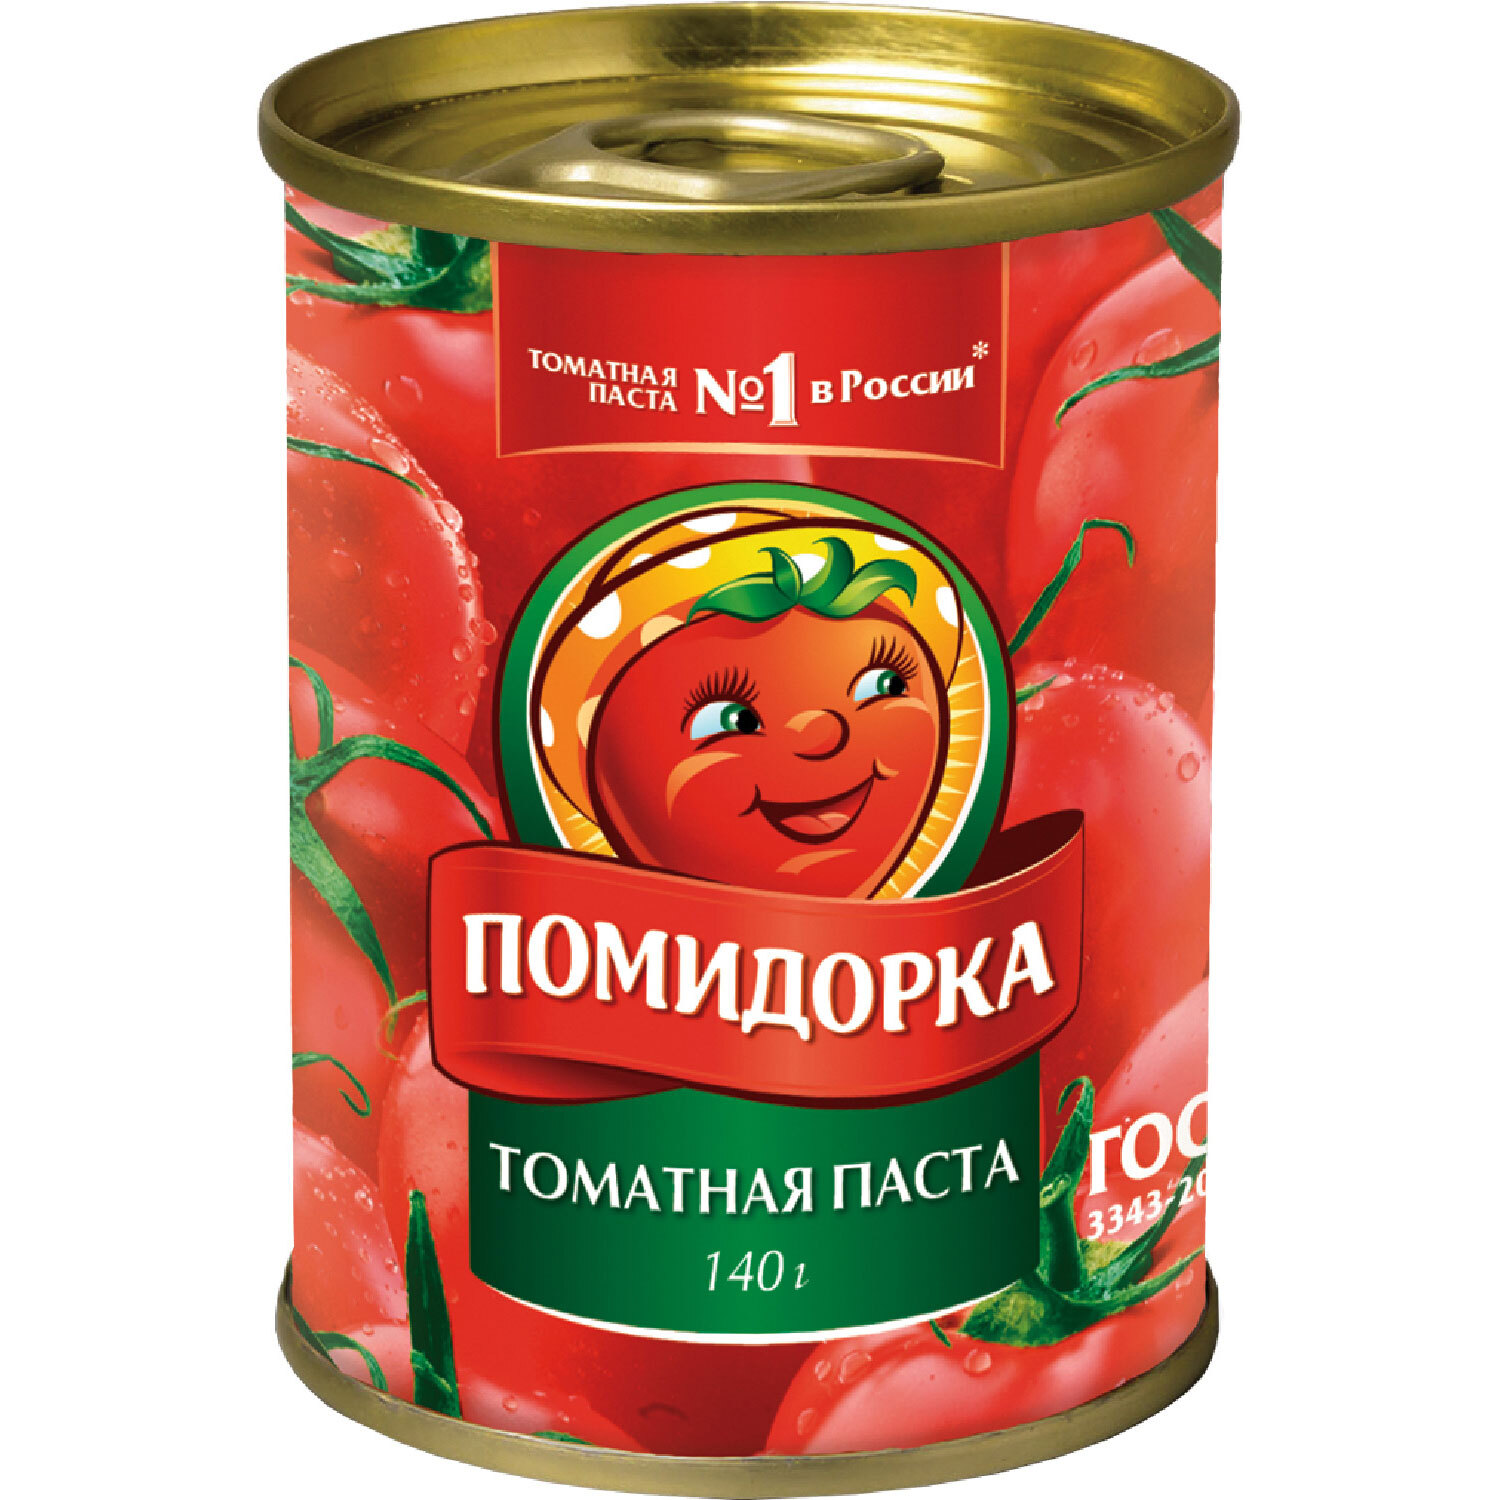 Помидоры в томатной пасте | Дачная кухня (luchistii-sudak.ru)